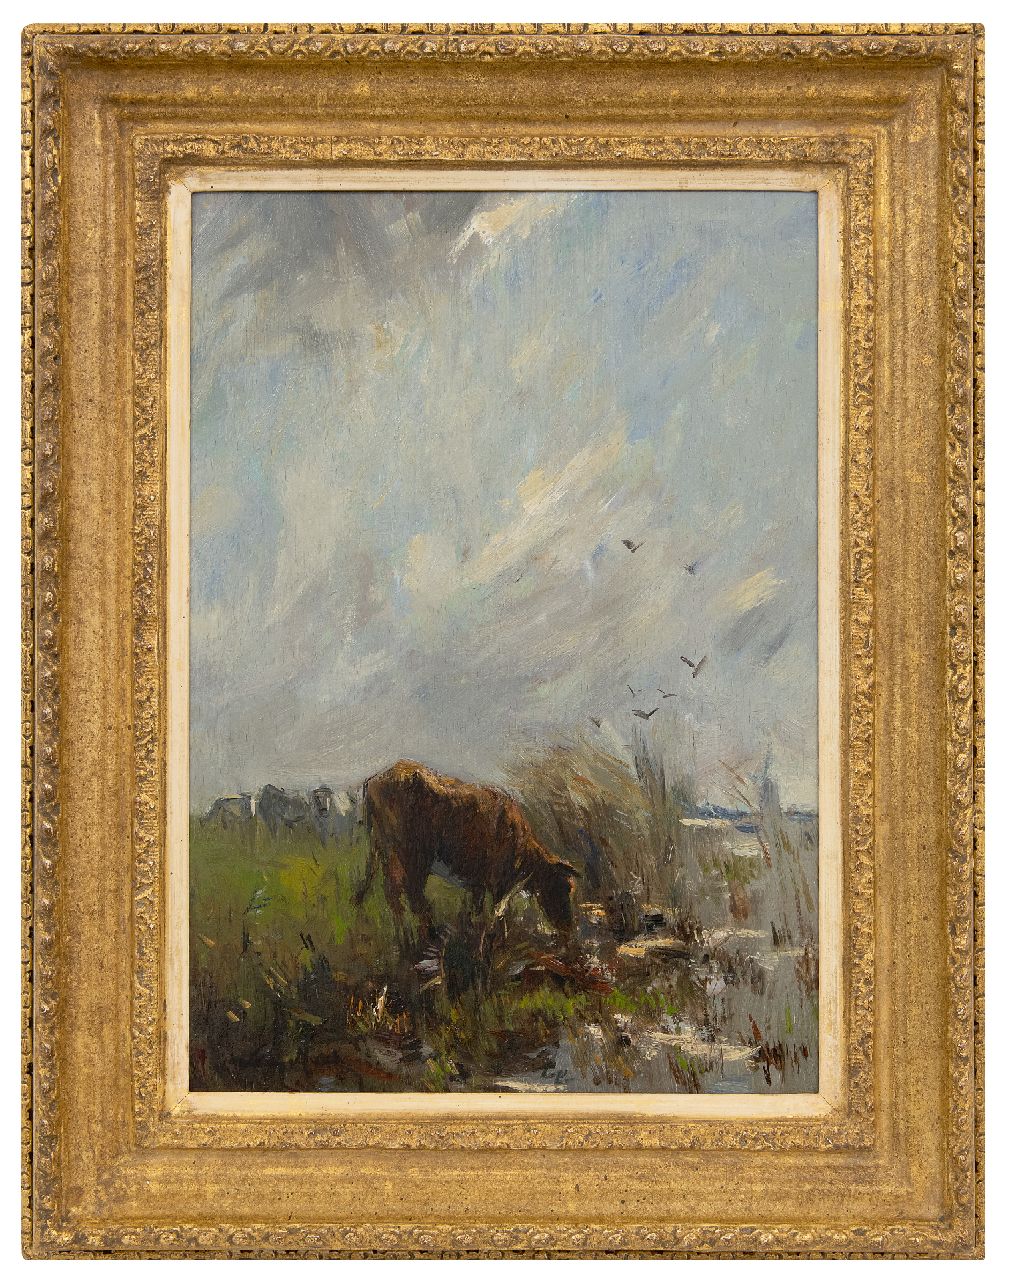 Maris W.  | Willem Maris | Schilderijen te koop aangeboden | Grazende koeien bij het water, olieverf op paneel 38,0 x 27,2 cm, gesigneerd linksonder